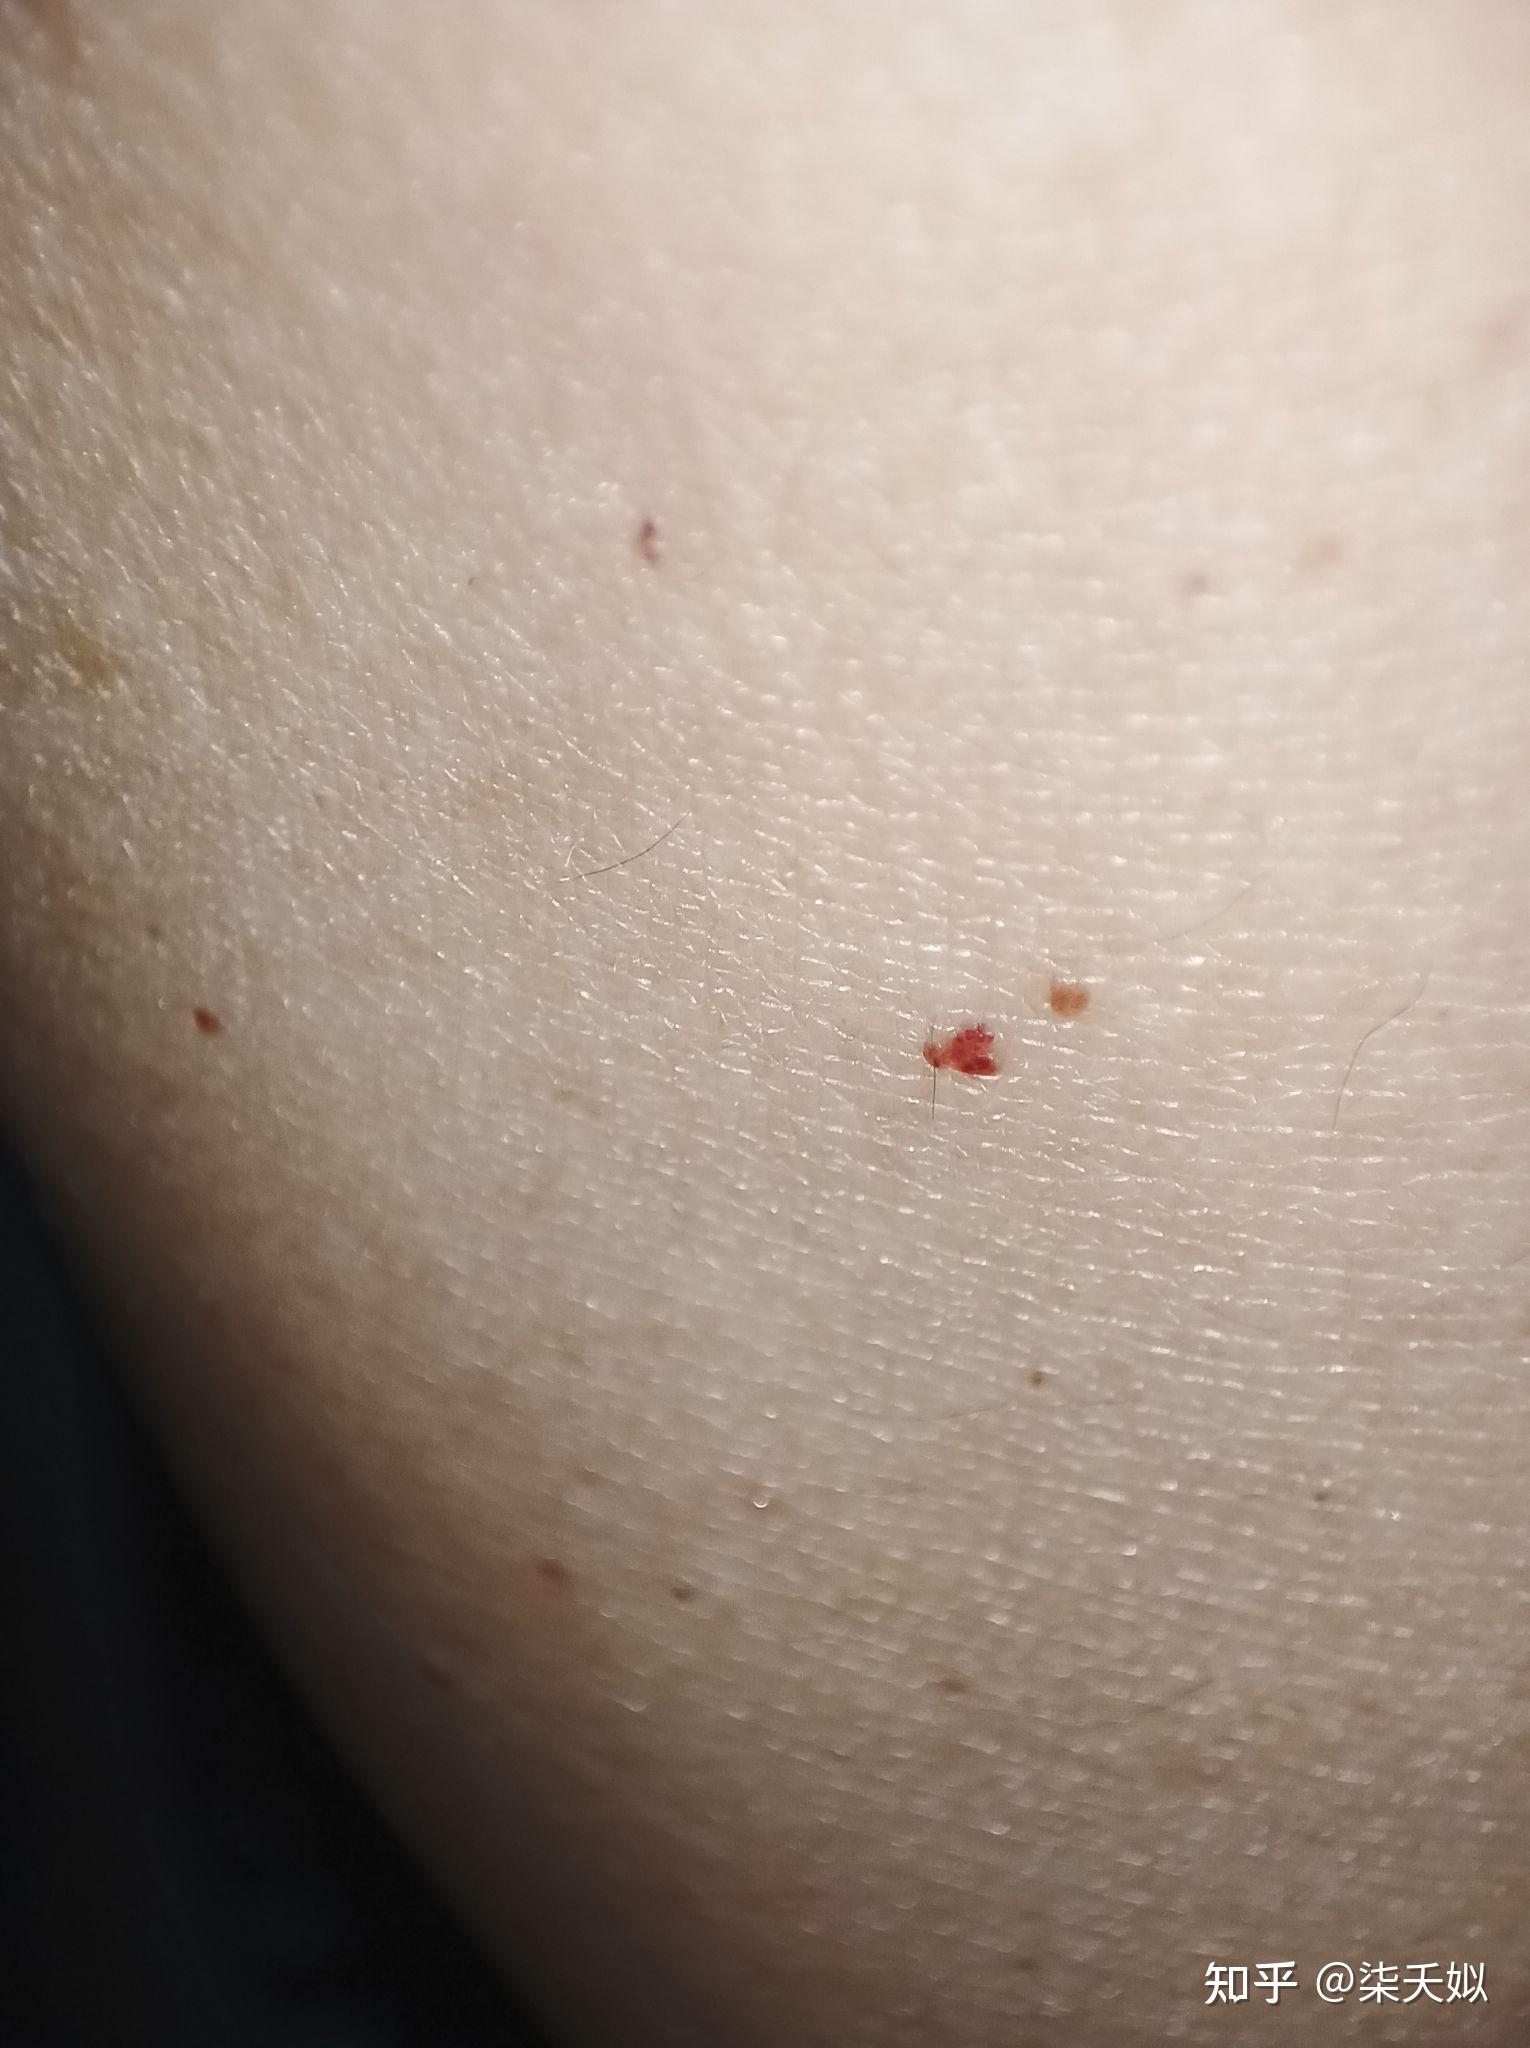 手臂上有很多红色的血点,越来越多,是什么原因呢